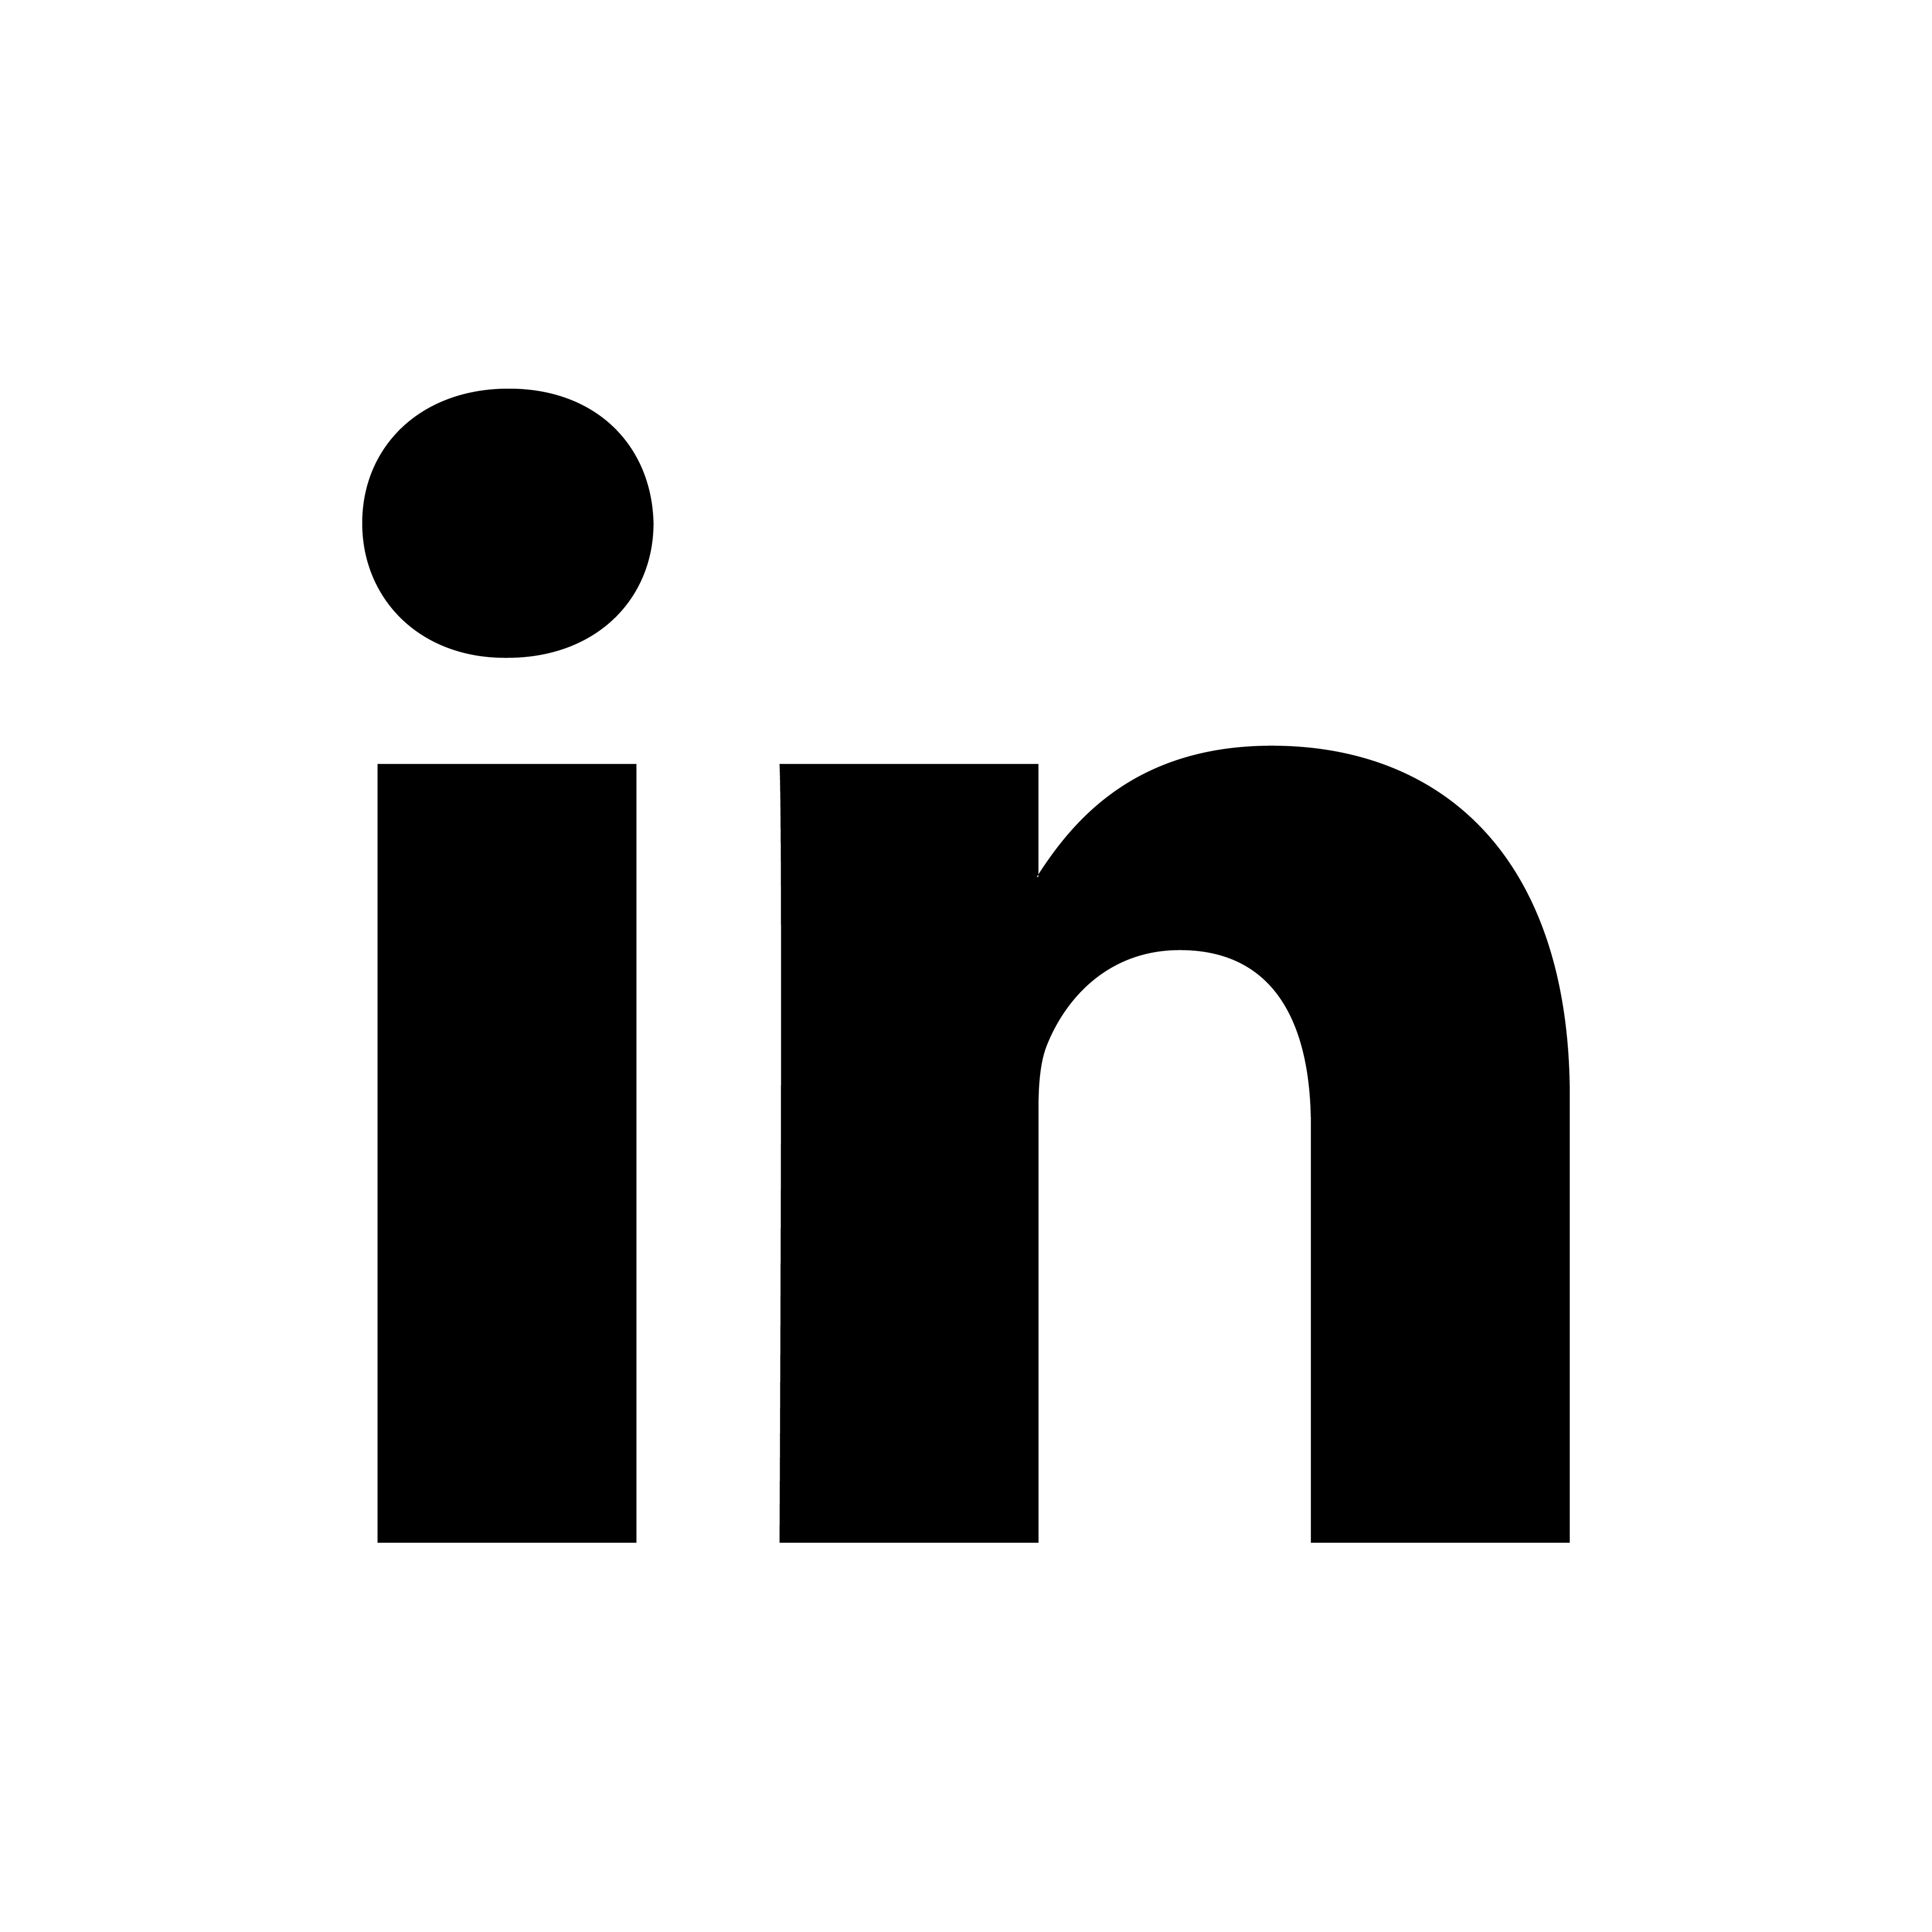 linkedin logo black png image #1845